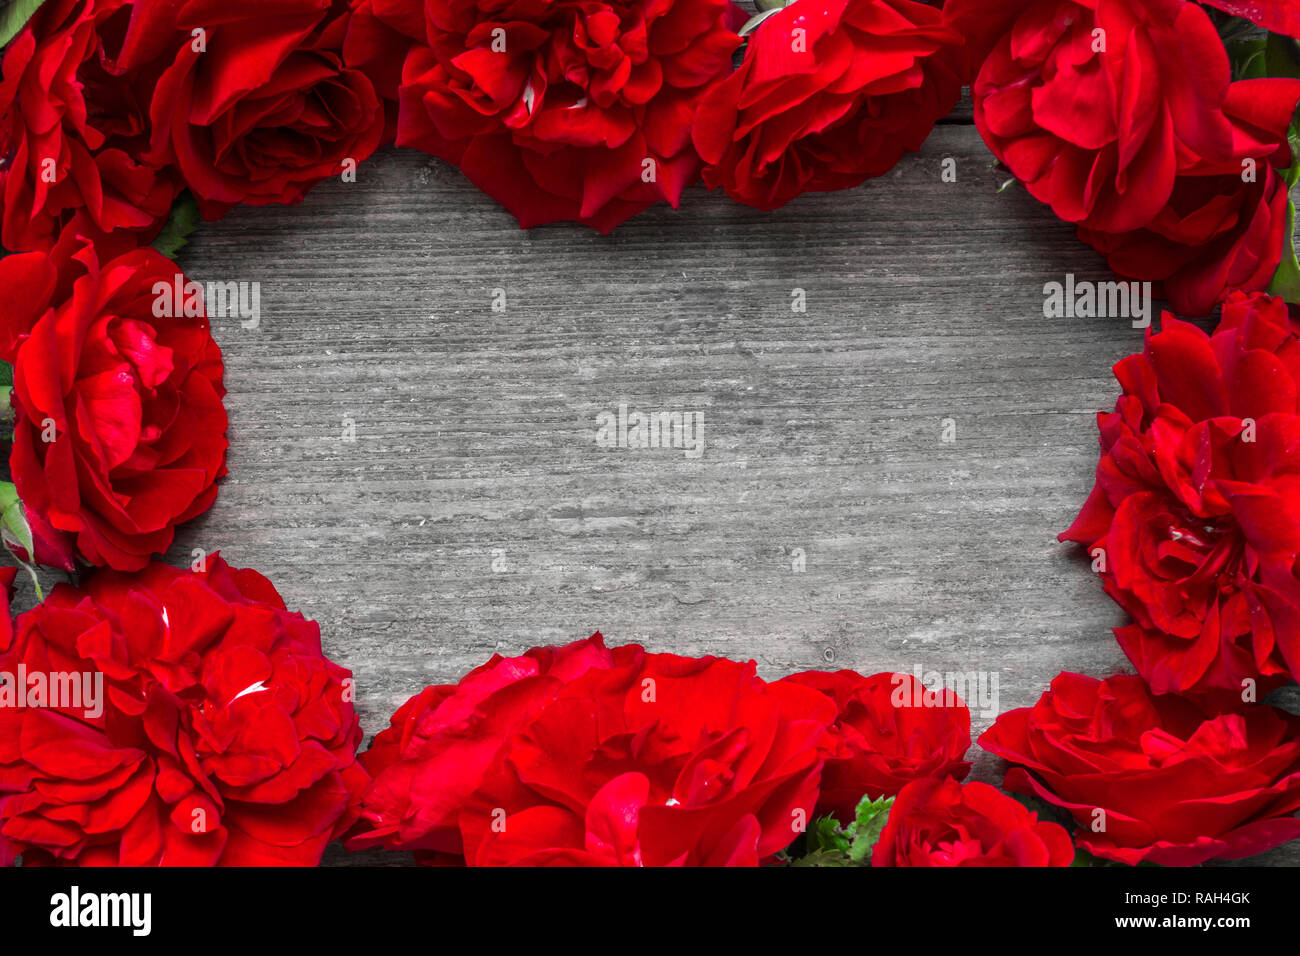 Cadre fait de roses rouges fleurs sur table en bois rustique. valentines day ou journée femmes fond. Télévision. Vue de dessus with copy space Banque D'Images